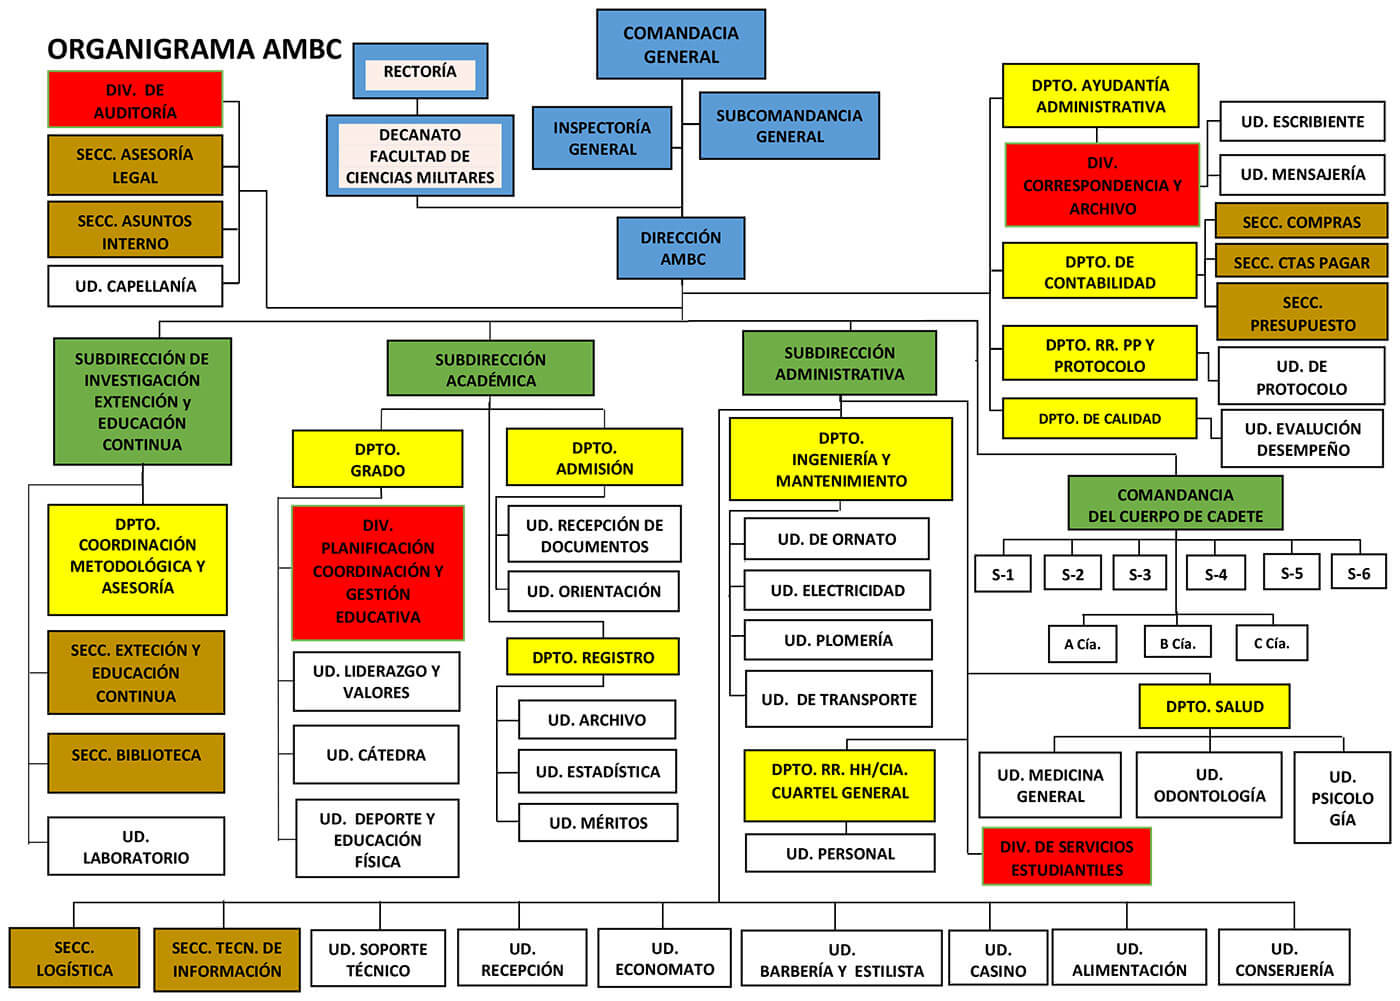 Organigrama Estructura Organizacional - Academia Militar Batalla de las Carreras